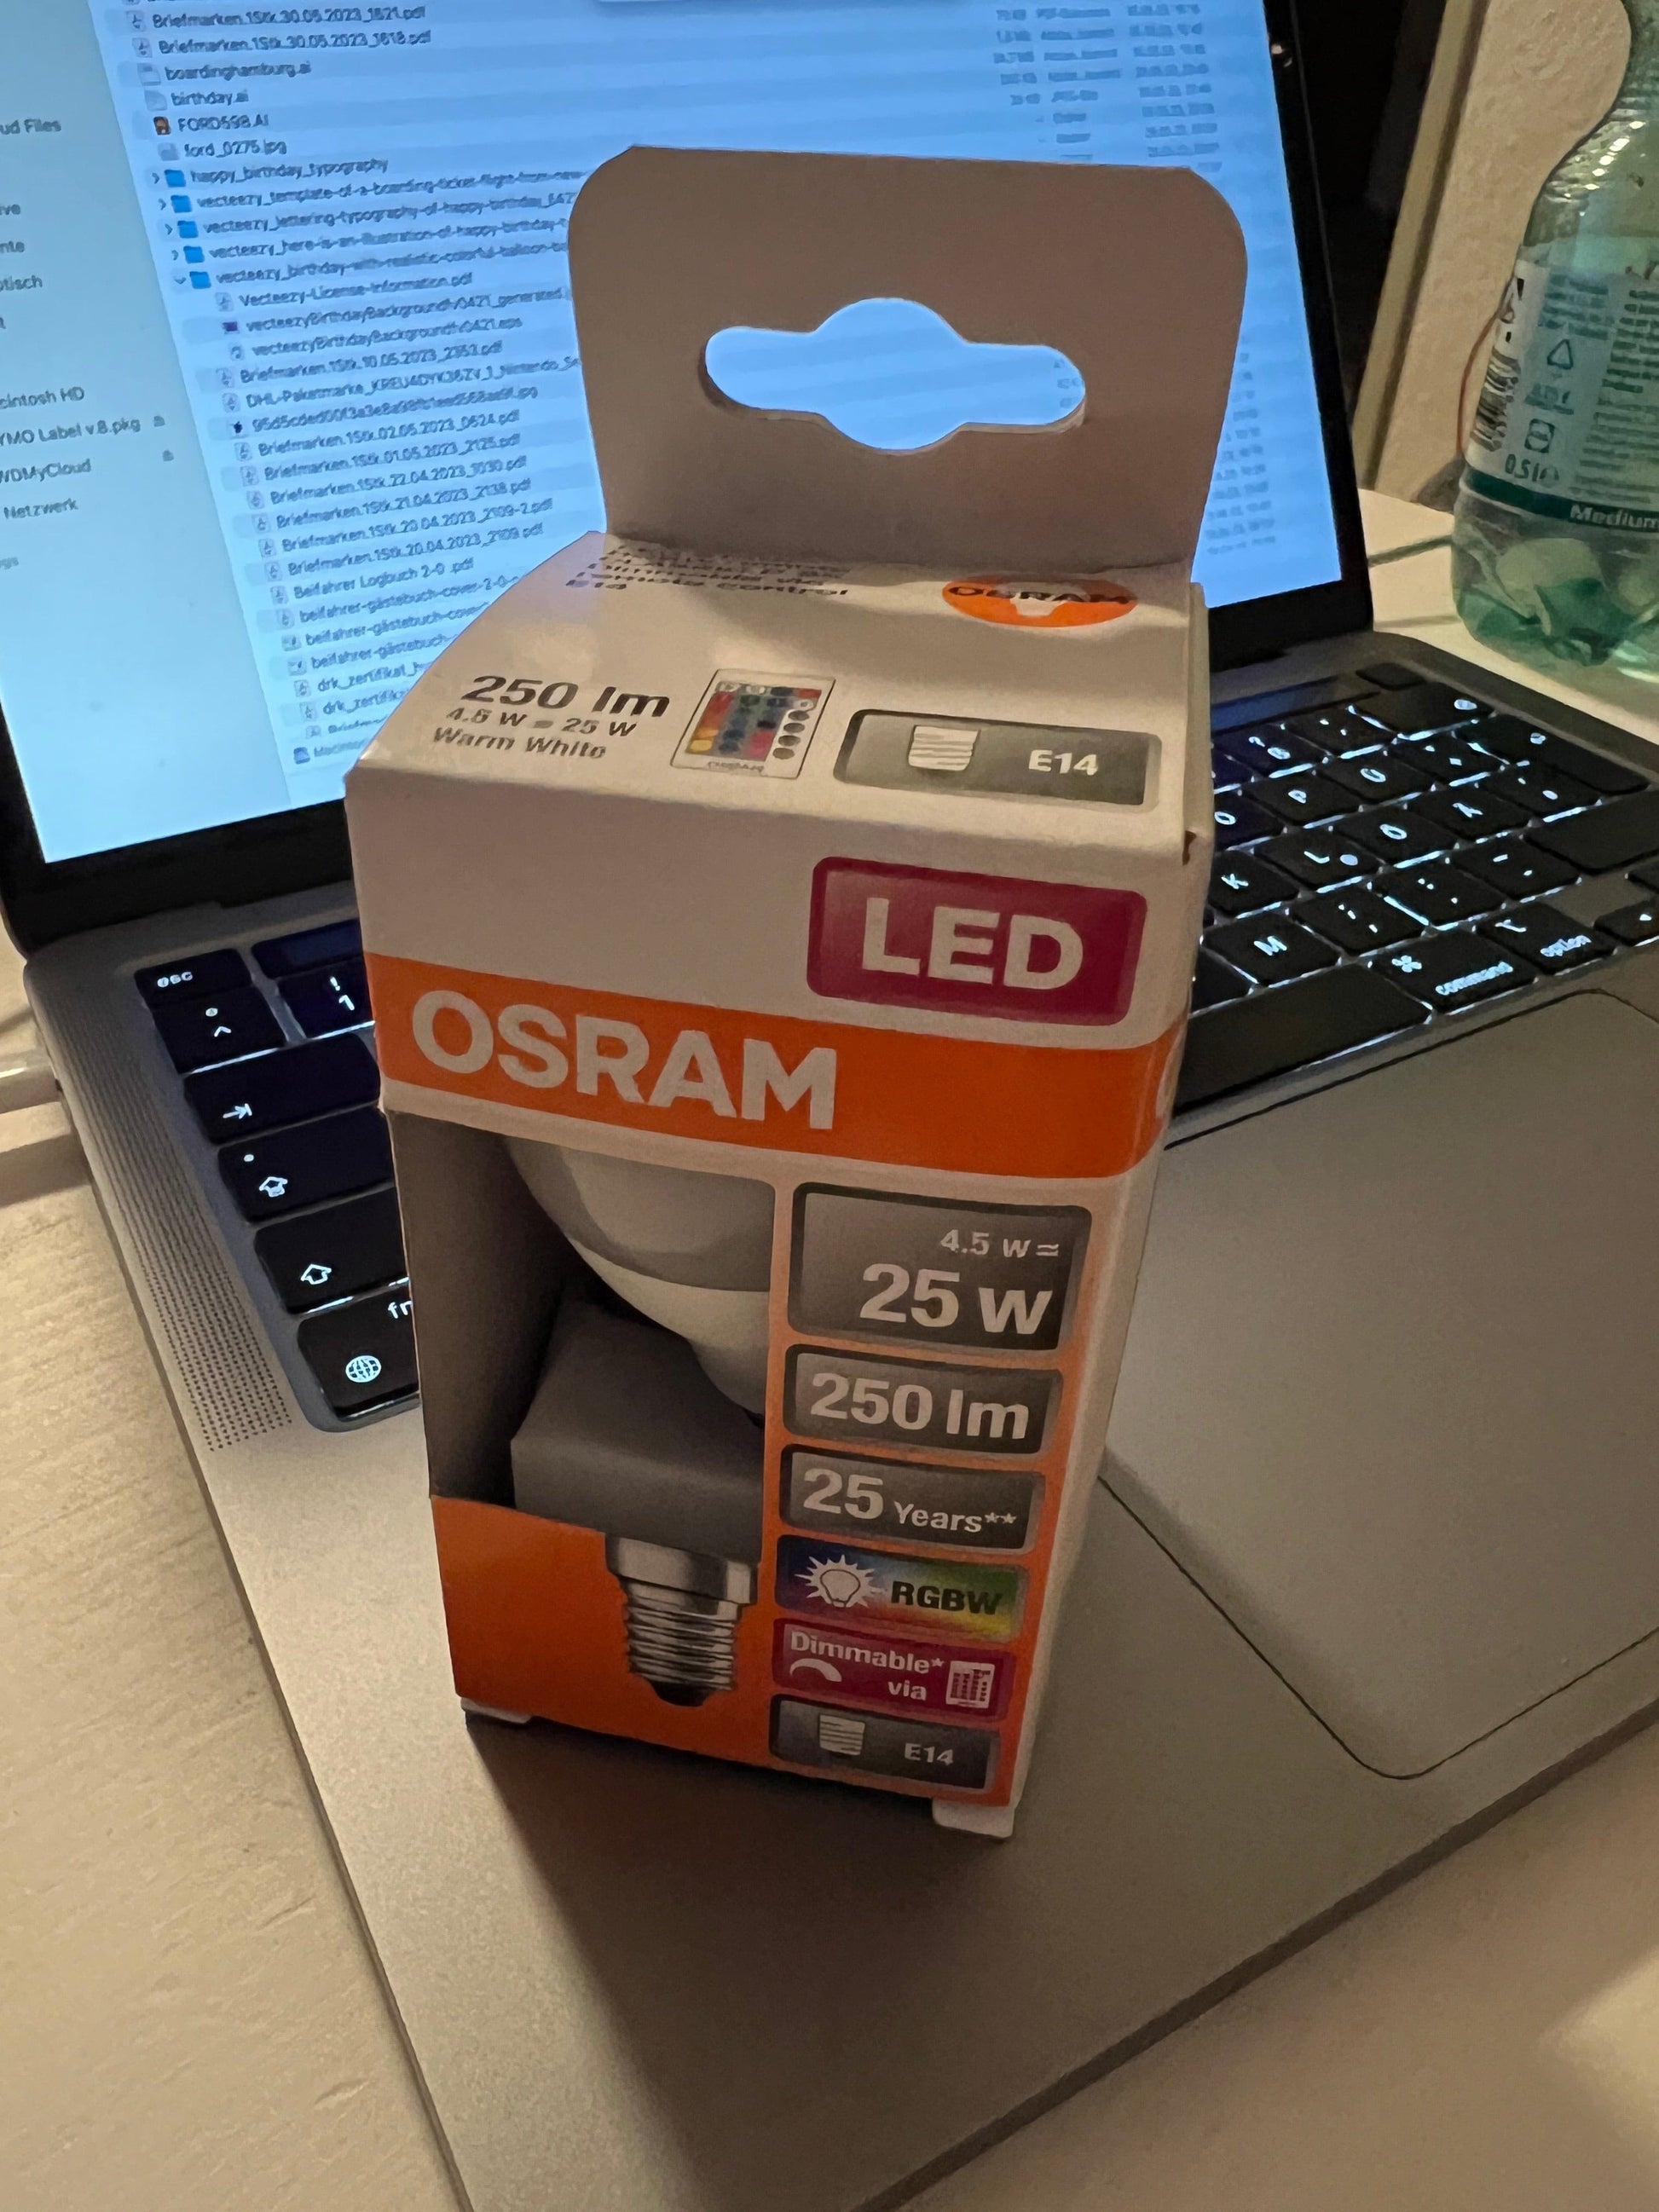 Osram LED E14 250lm RGBW 4,5w/25w - Karten-Kiosk.de